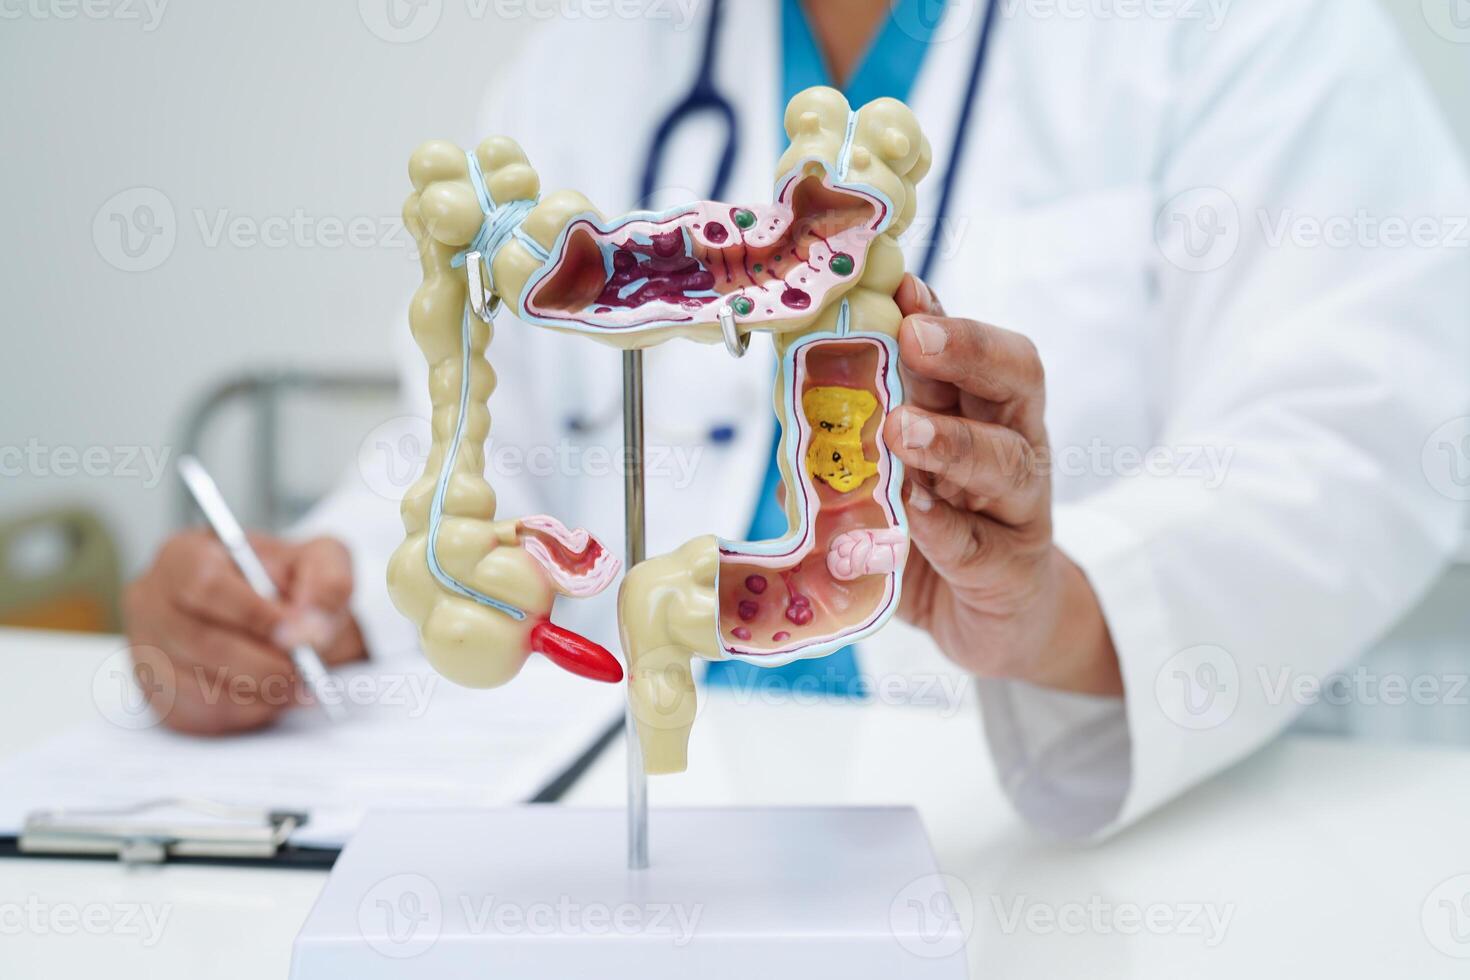 intestino, médico participación humano anatomía modelo para estudiar diagnóstico y tratamiento en hospital. foto